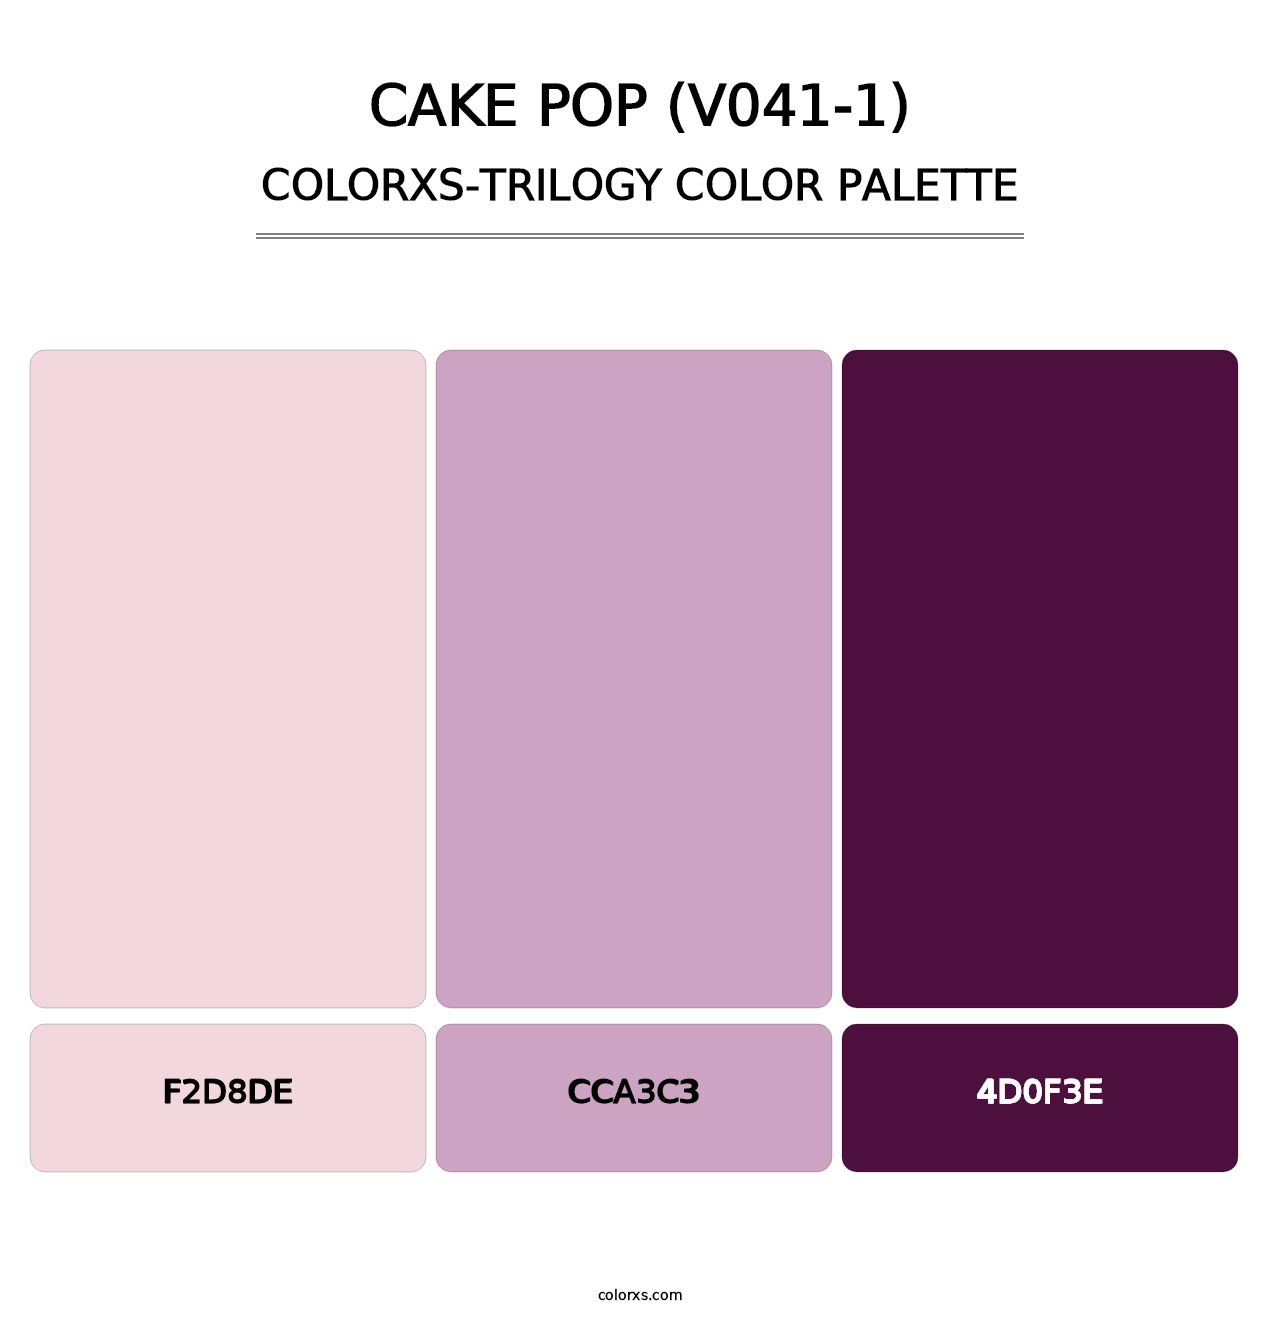 Cake Pop (V041-1) - Colorxs Trilogy Palette